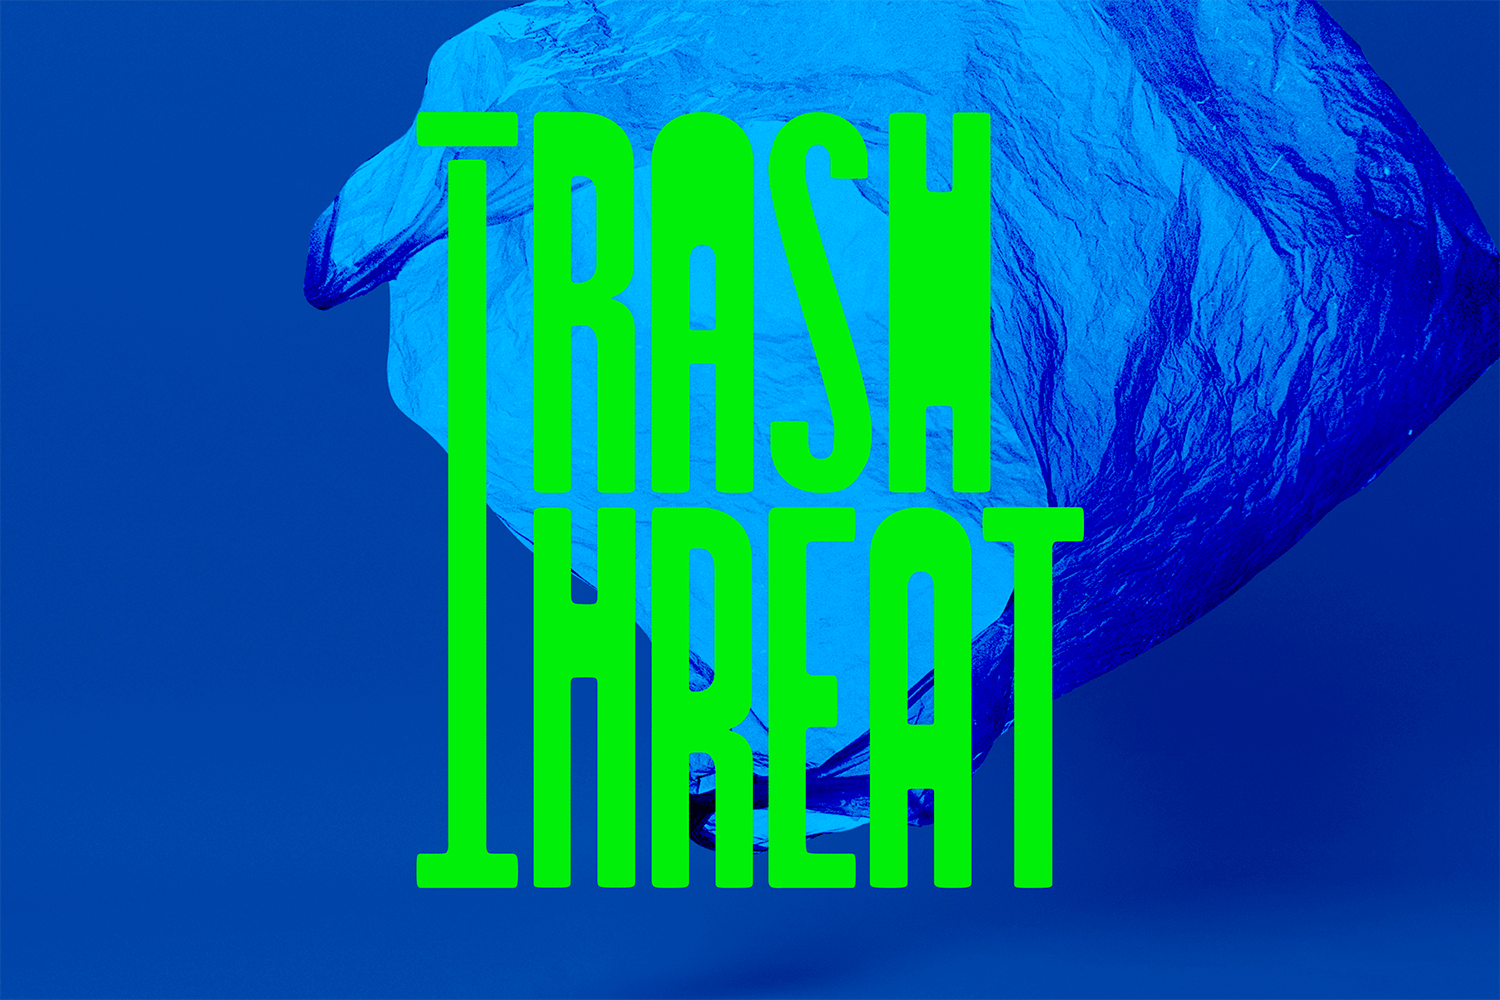 trash-threat-1